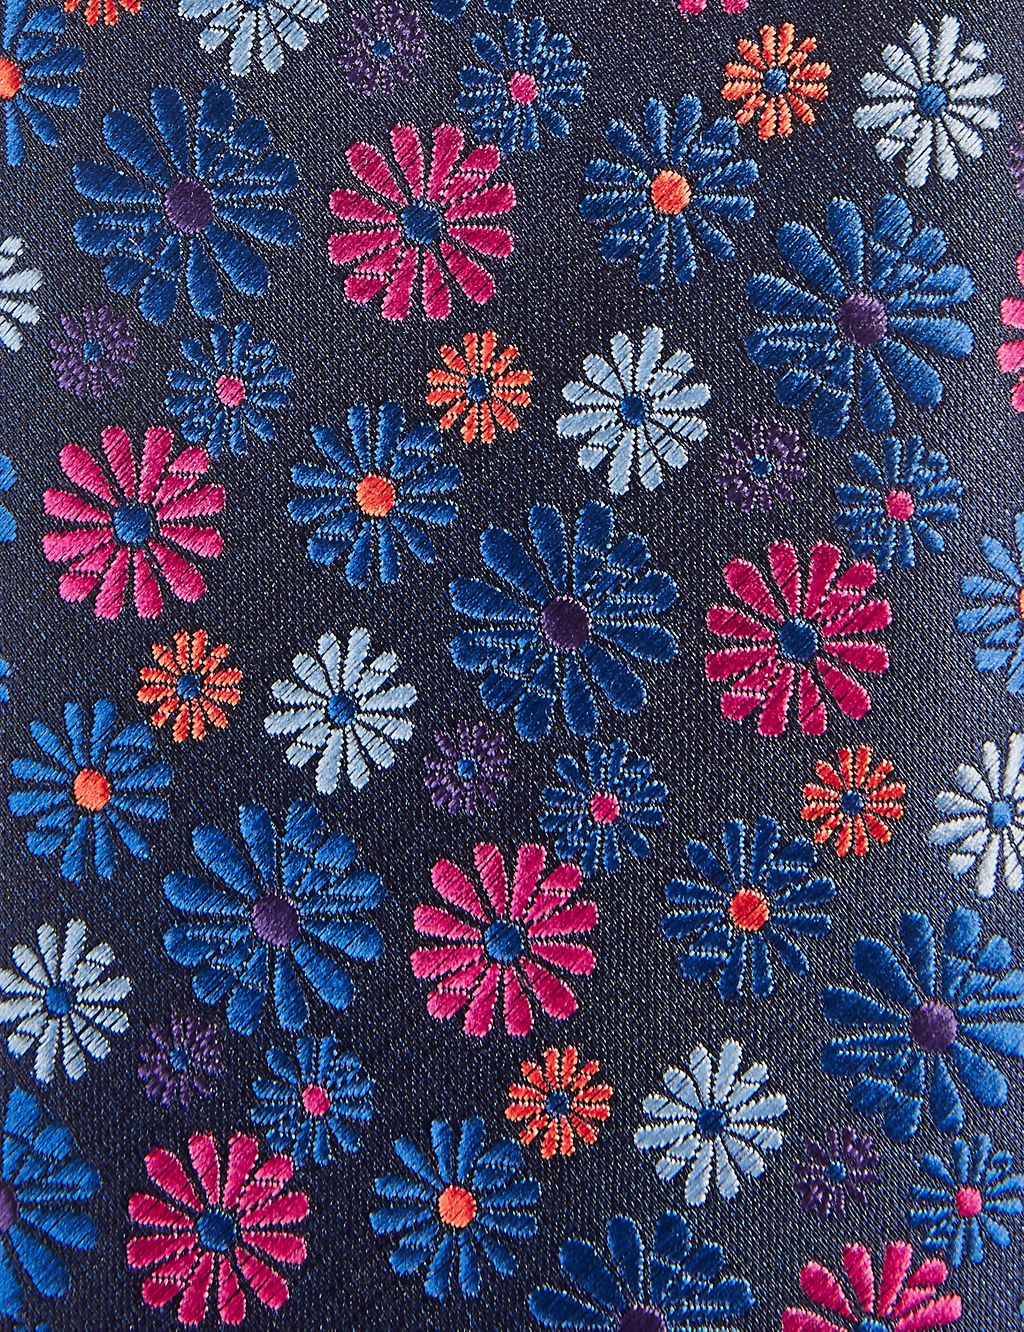 Floral Print Tie 2 of 3